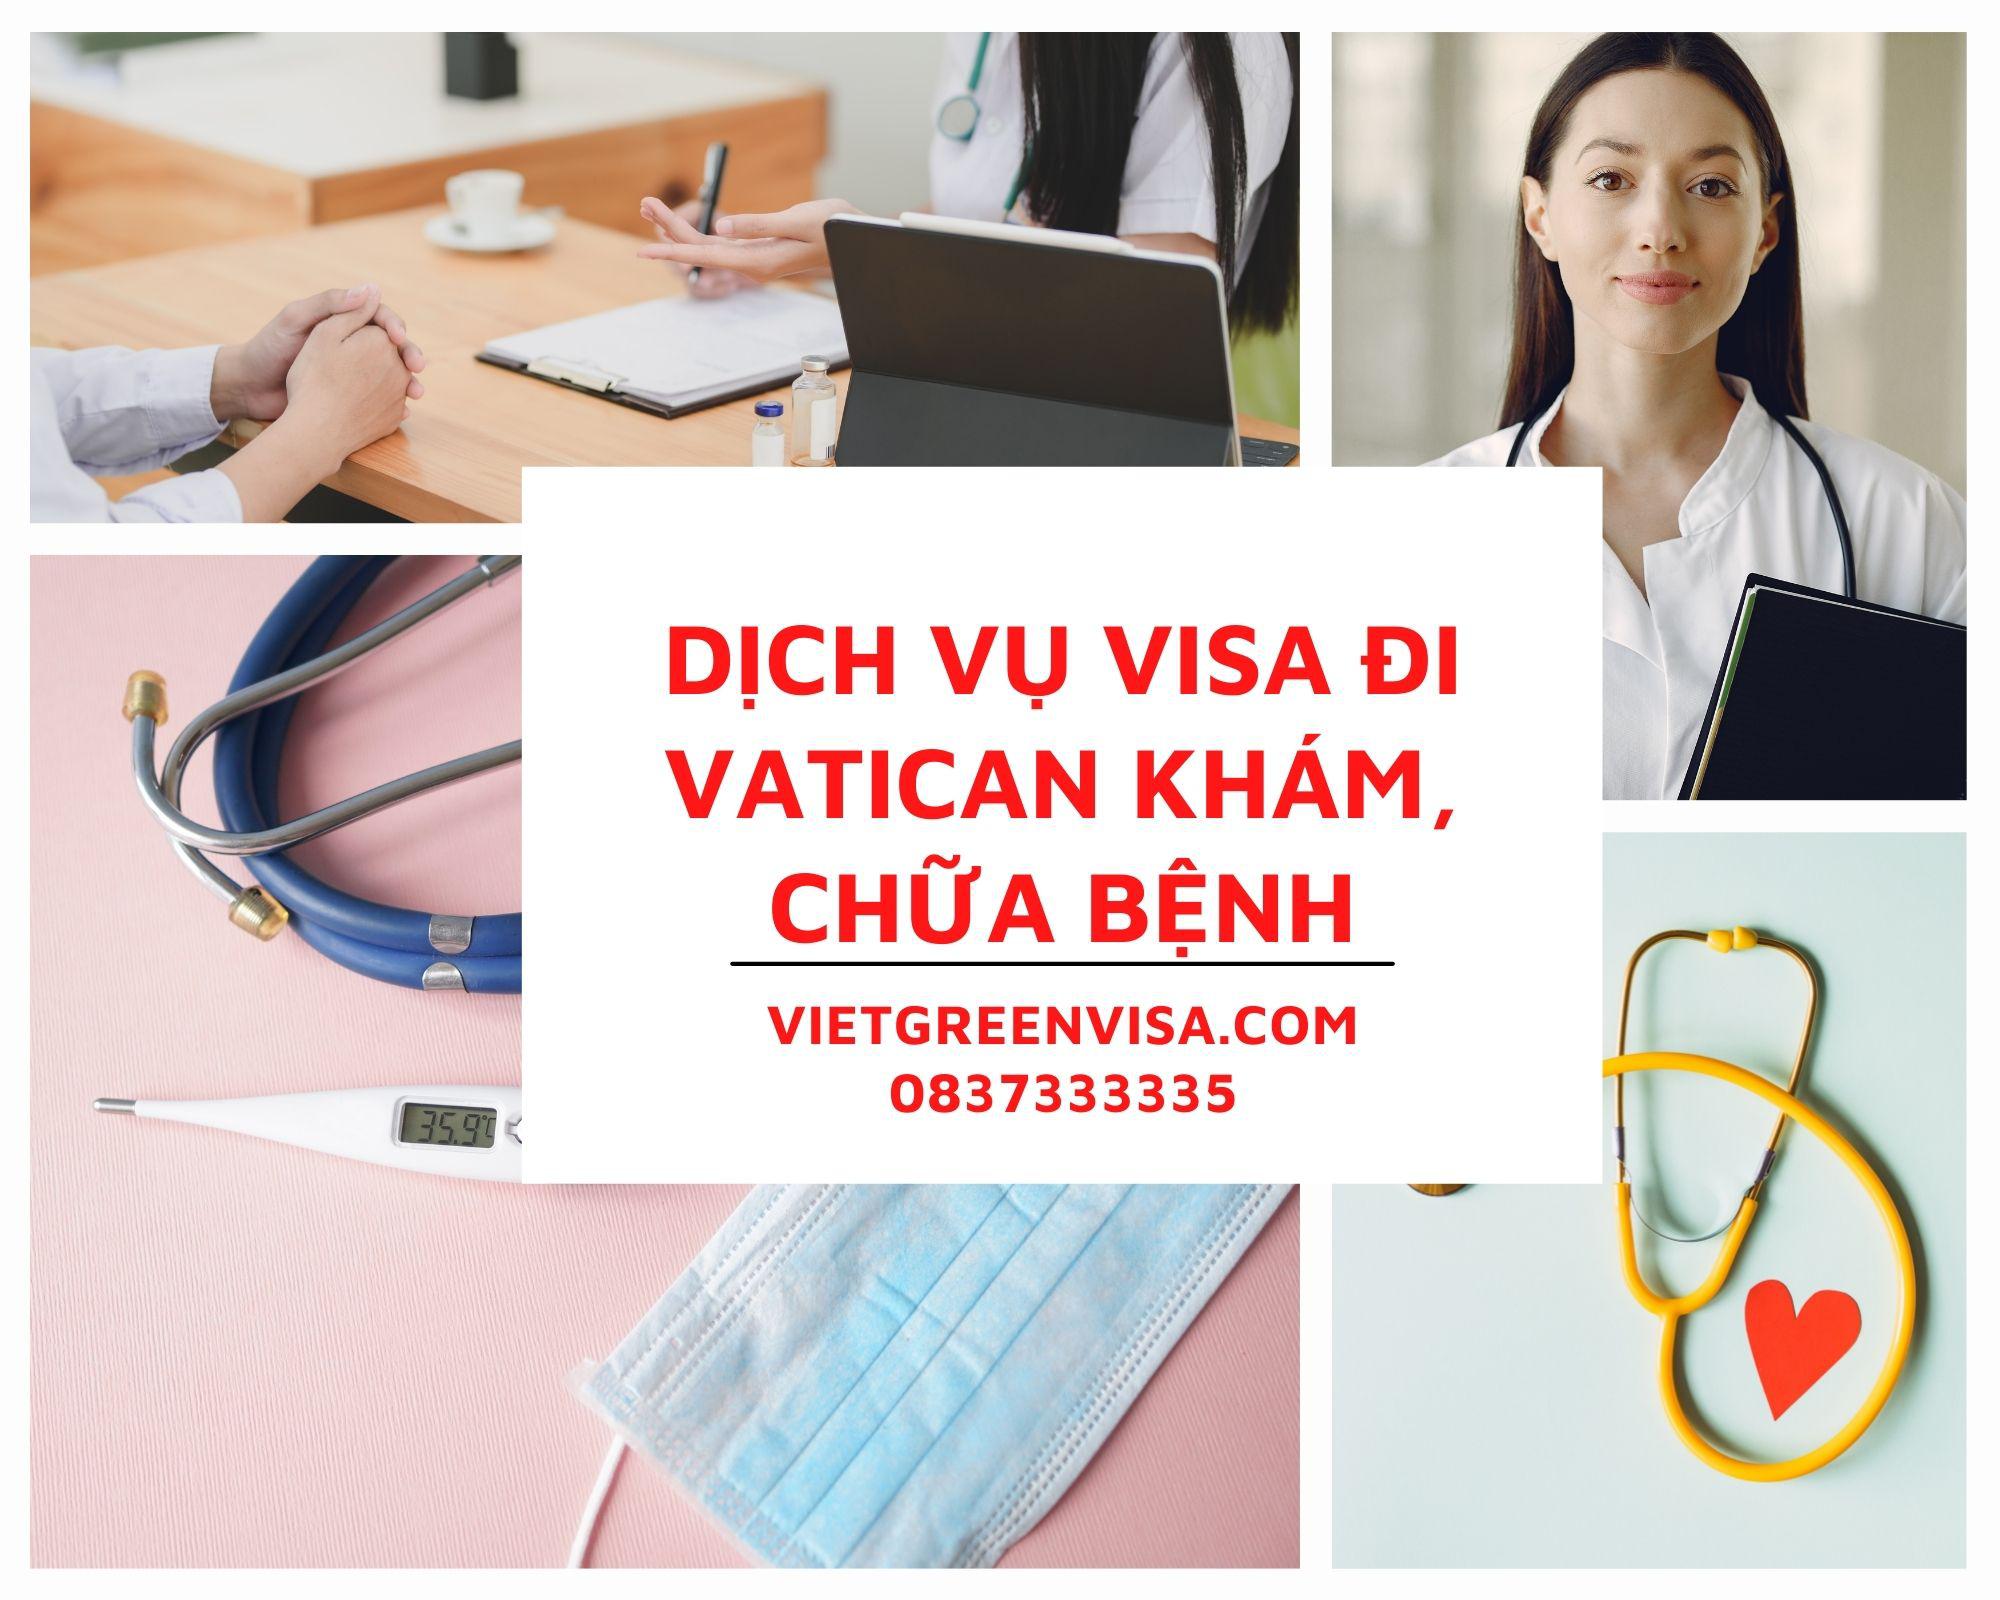 Tư vấn visa đi Vatican khám chữa bệnh uy tín